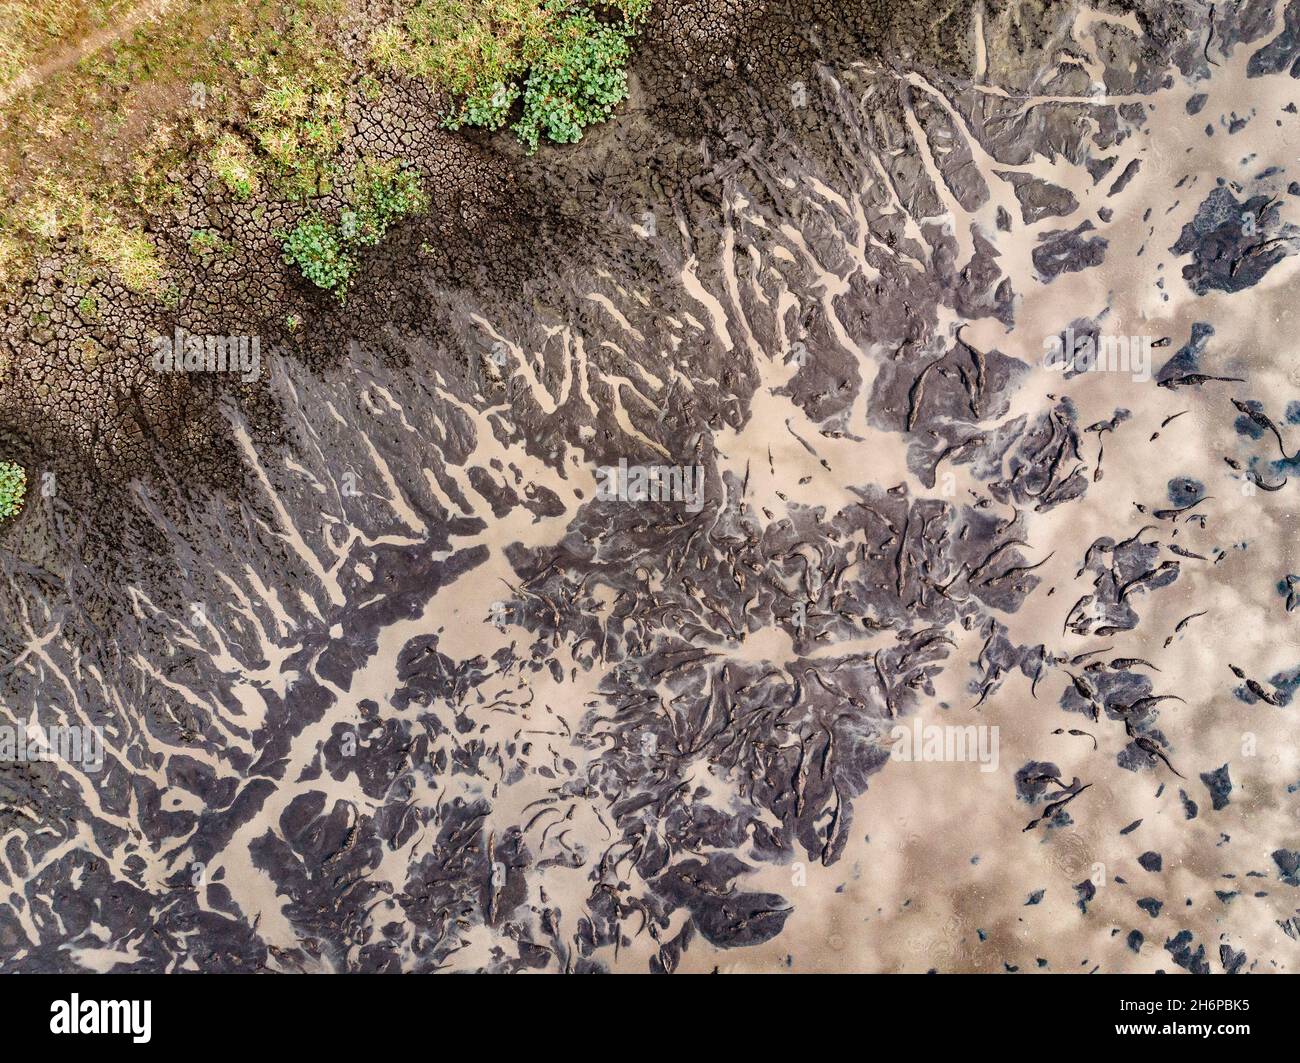 Beaucoup de caimans se rassemblent à un trou de boue/eau pendant une saison sèche extrême dans le Pantanal du Brésil Banque D'Images